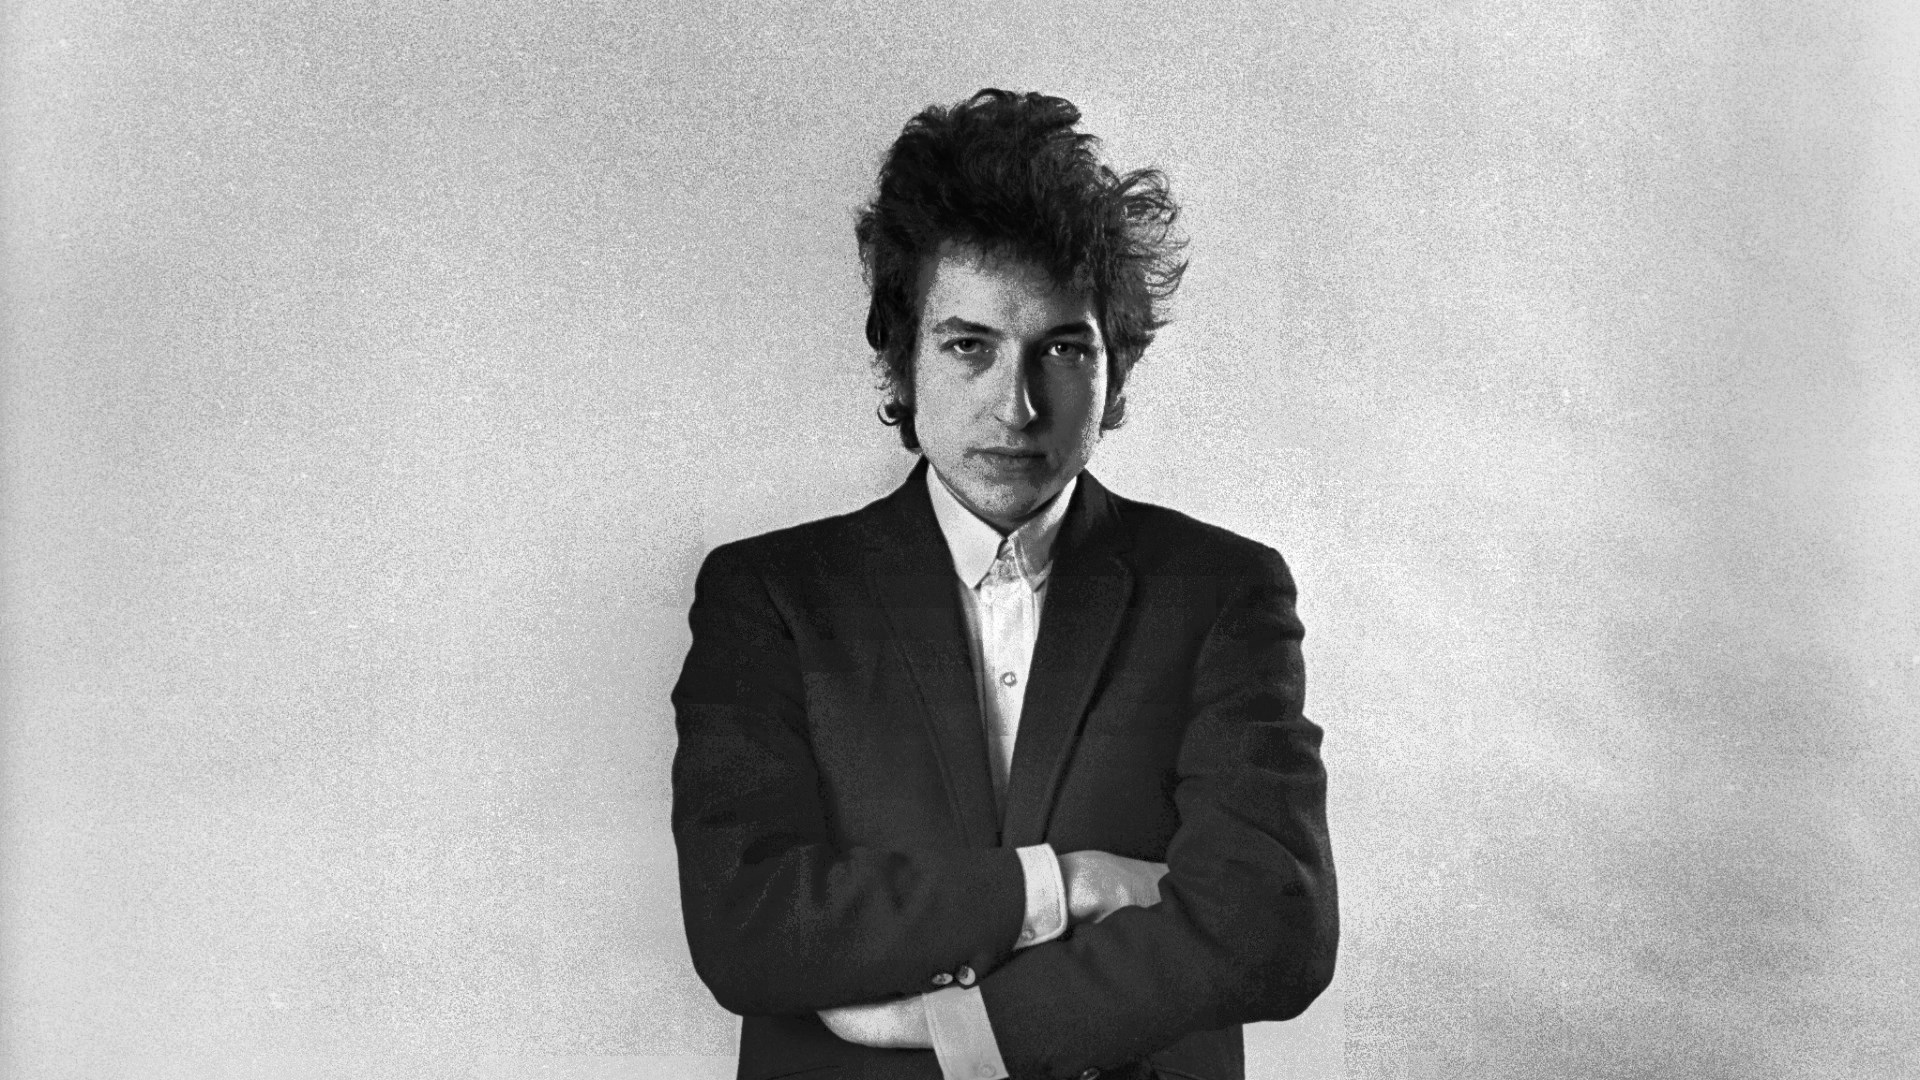 Bob Dylan Wallpaper For Desktop Background